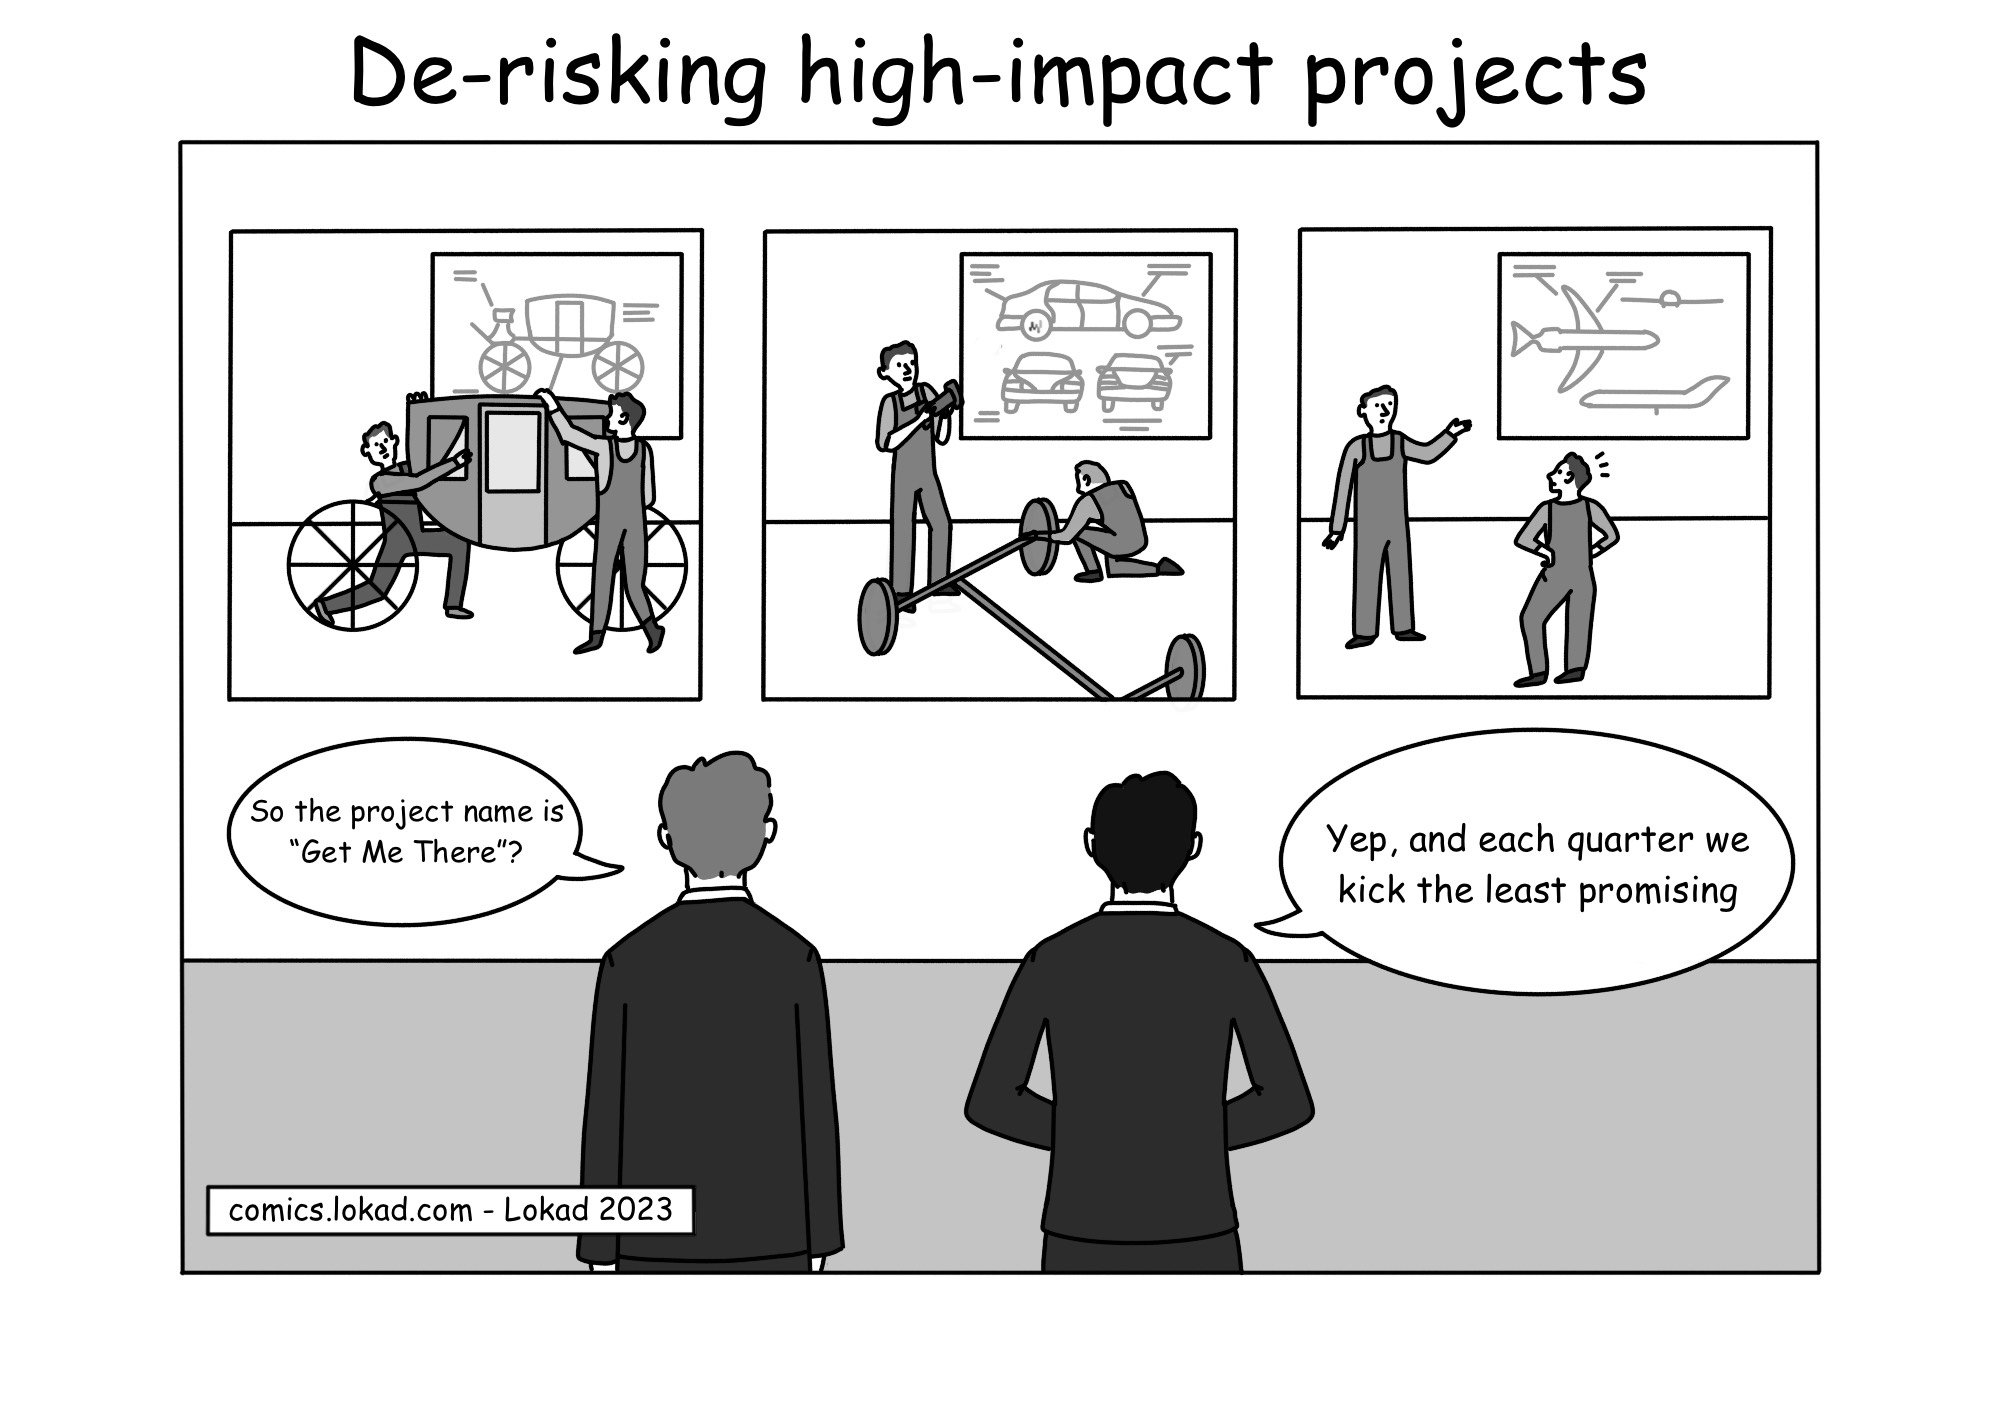 Bande dessinée sur la réduction des risques des projets à fort impact